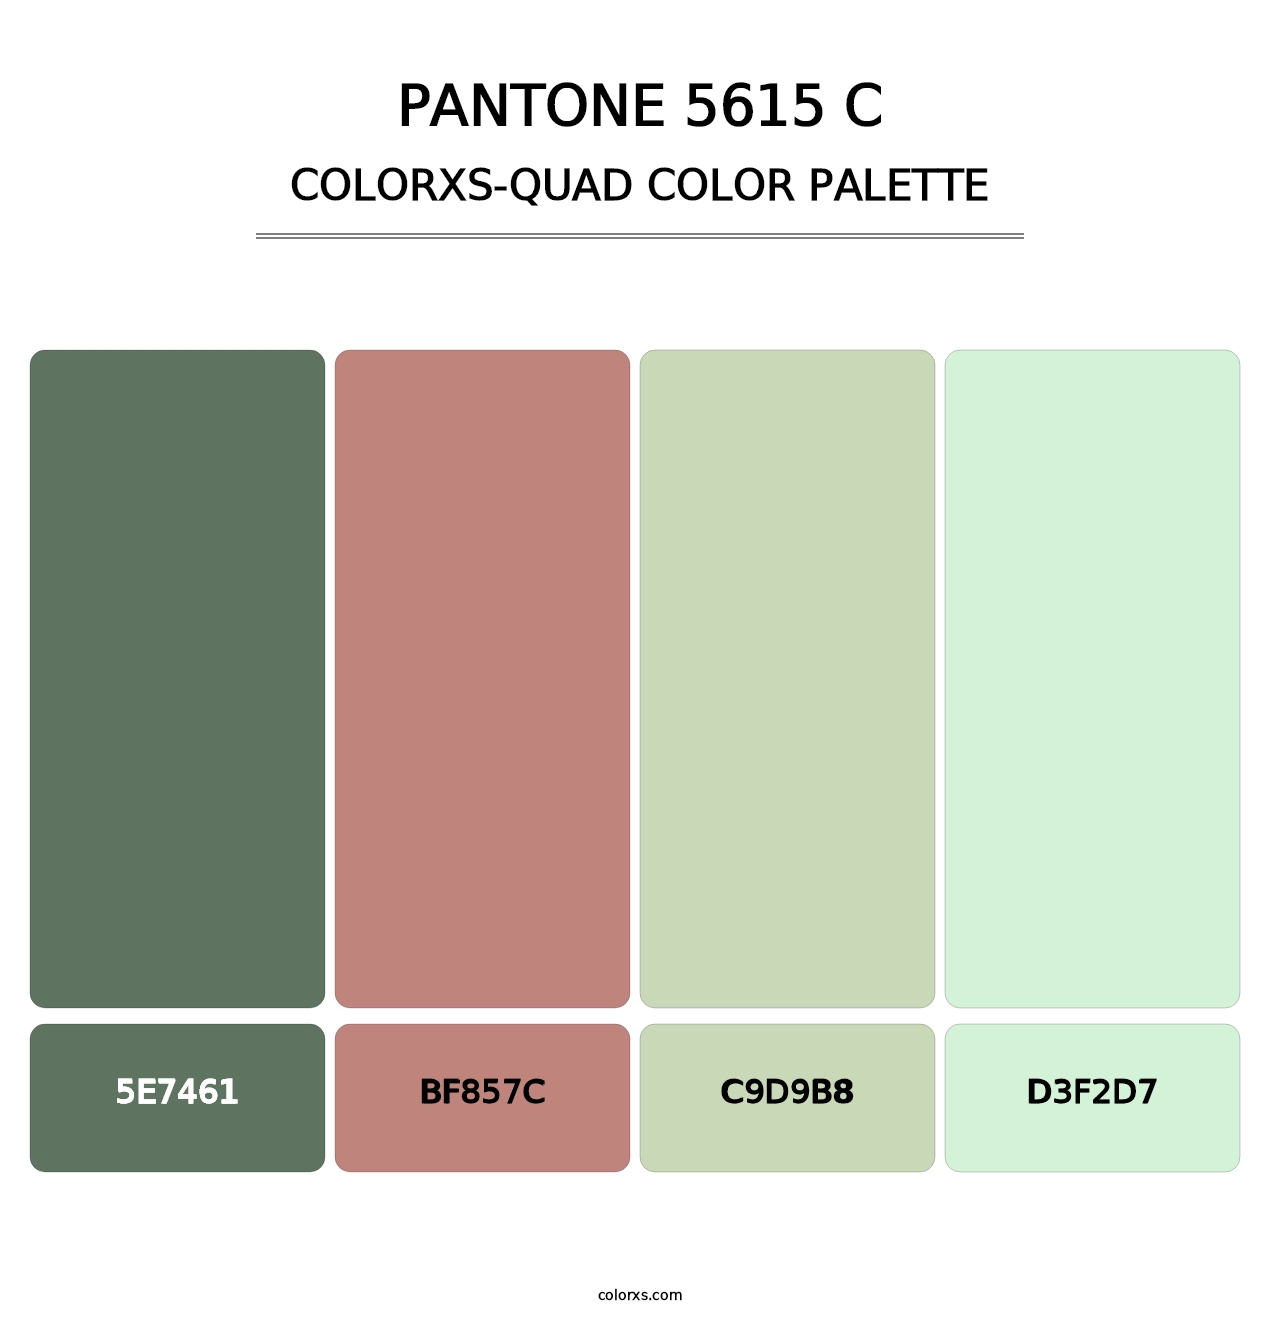 PANTONE 5615 C - Colorxs Quad Palette